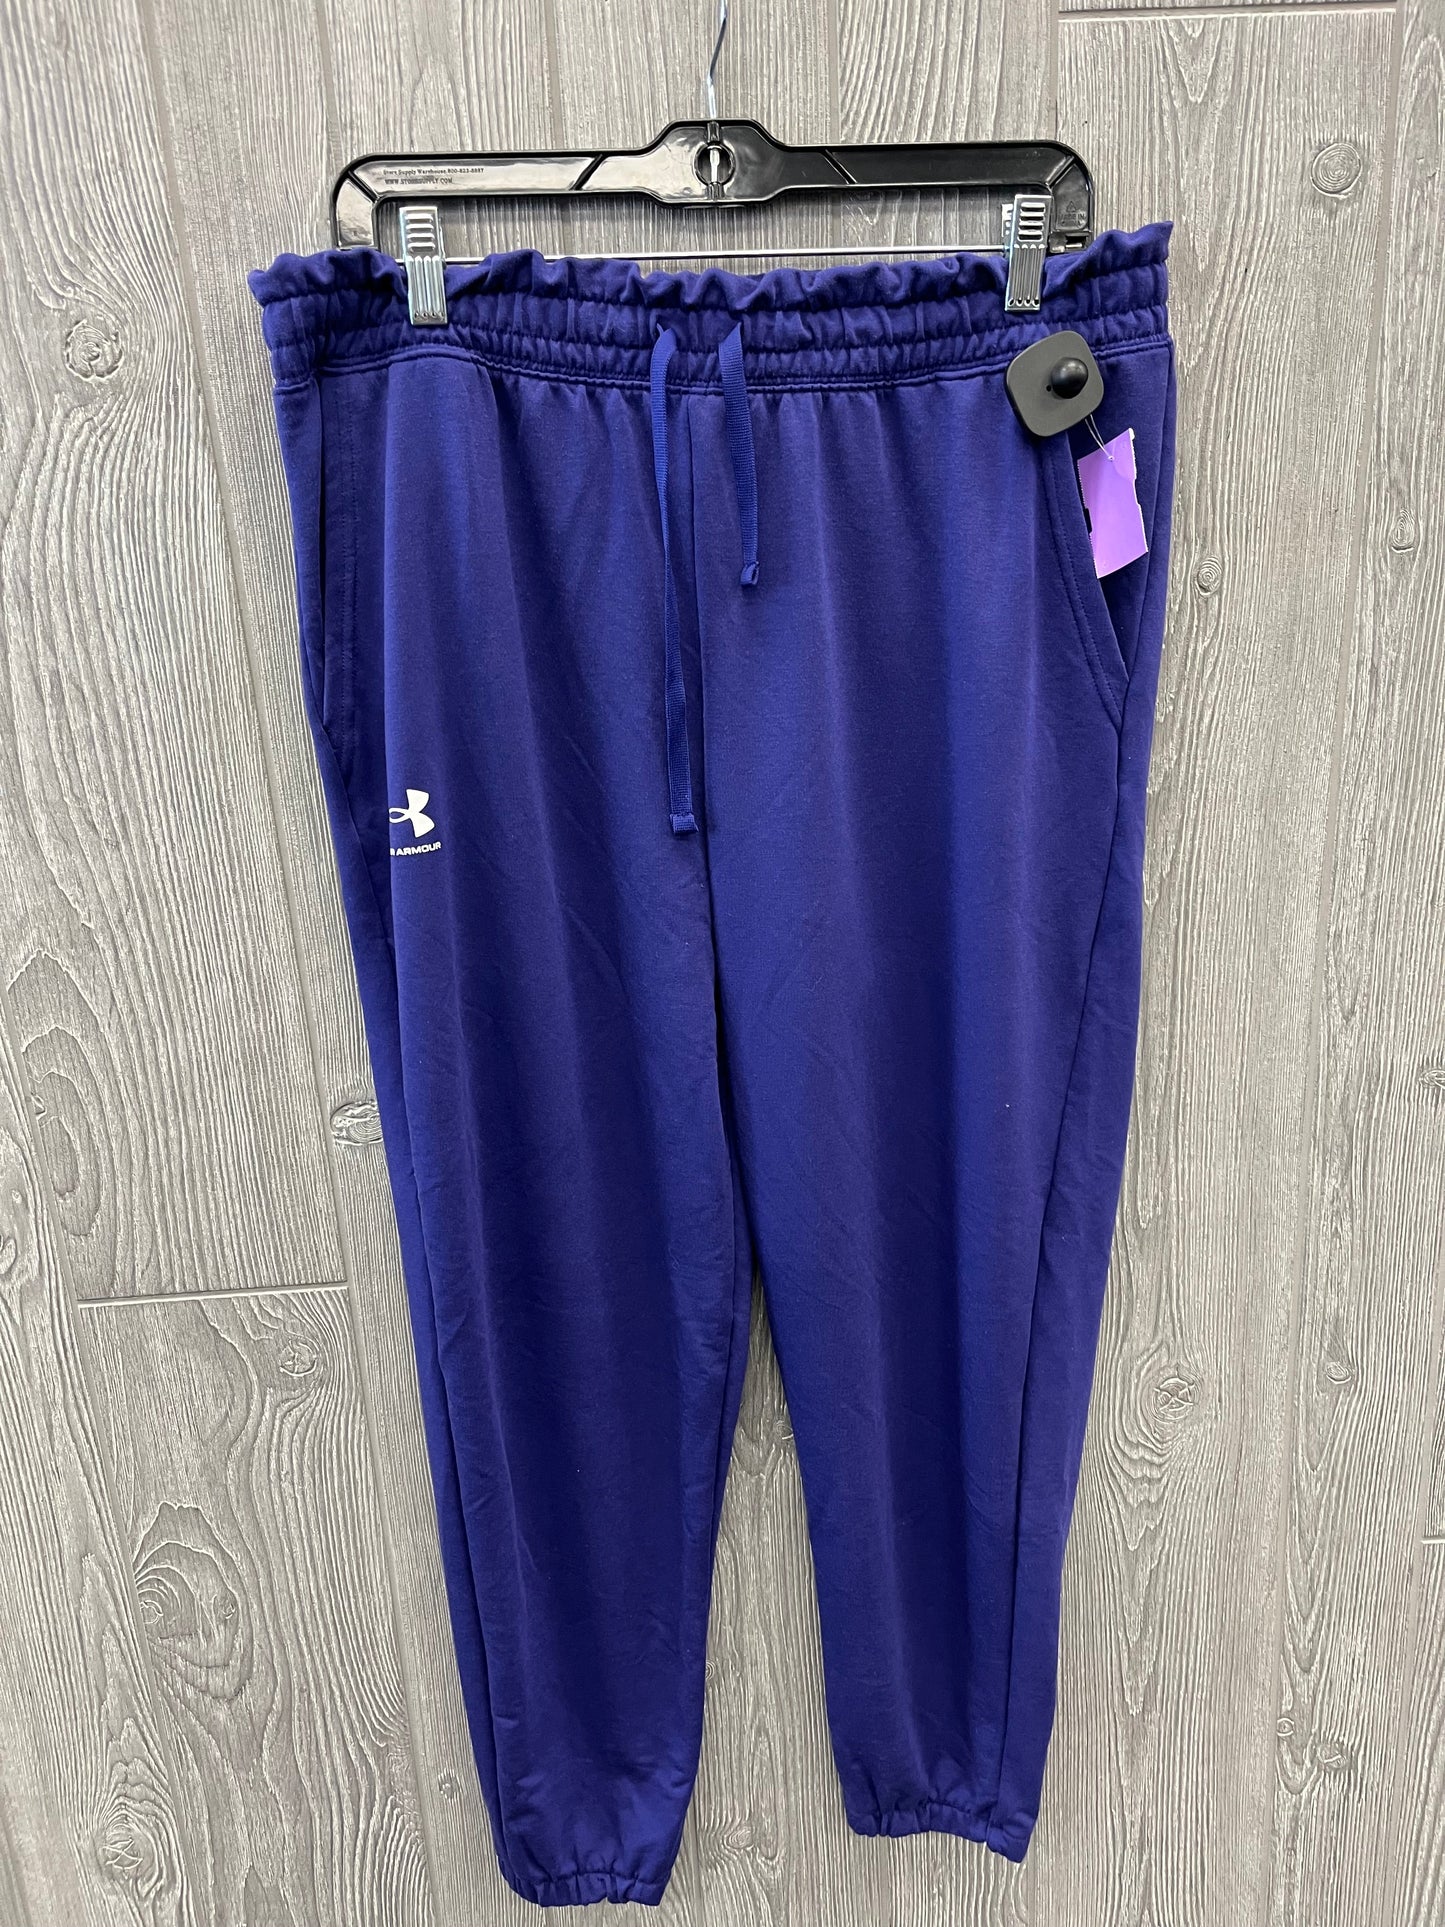 Purple Athletic Pants Under Armour, Size L